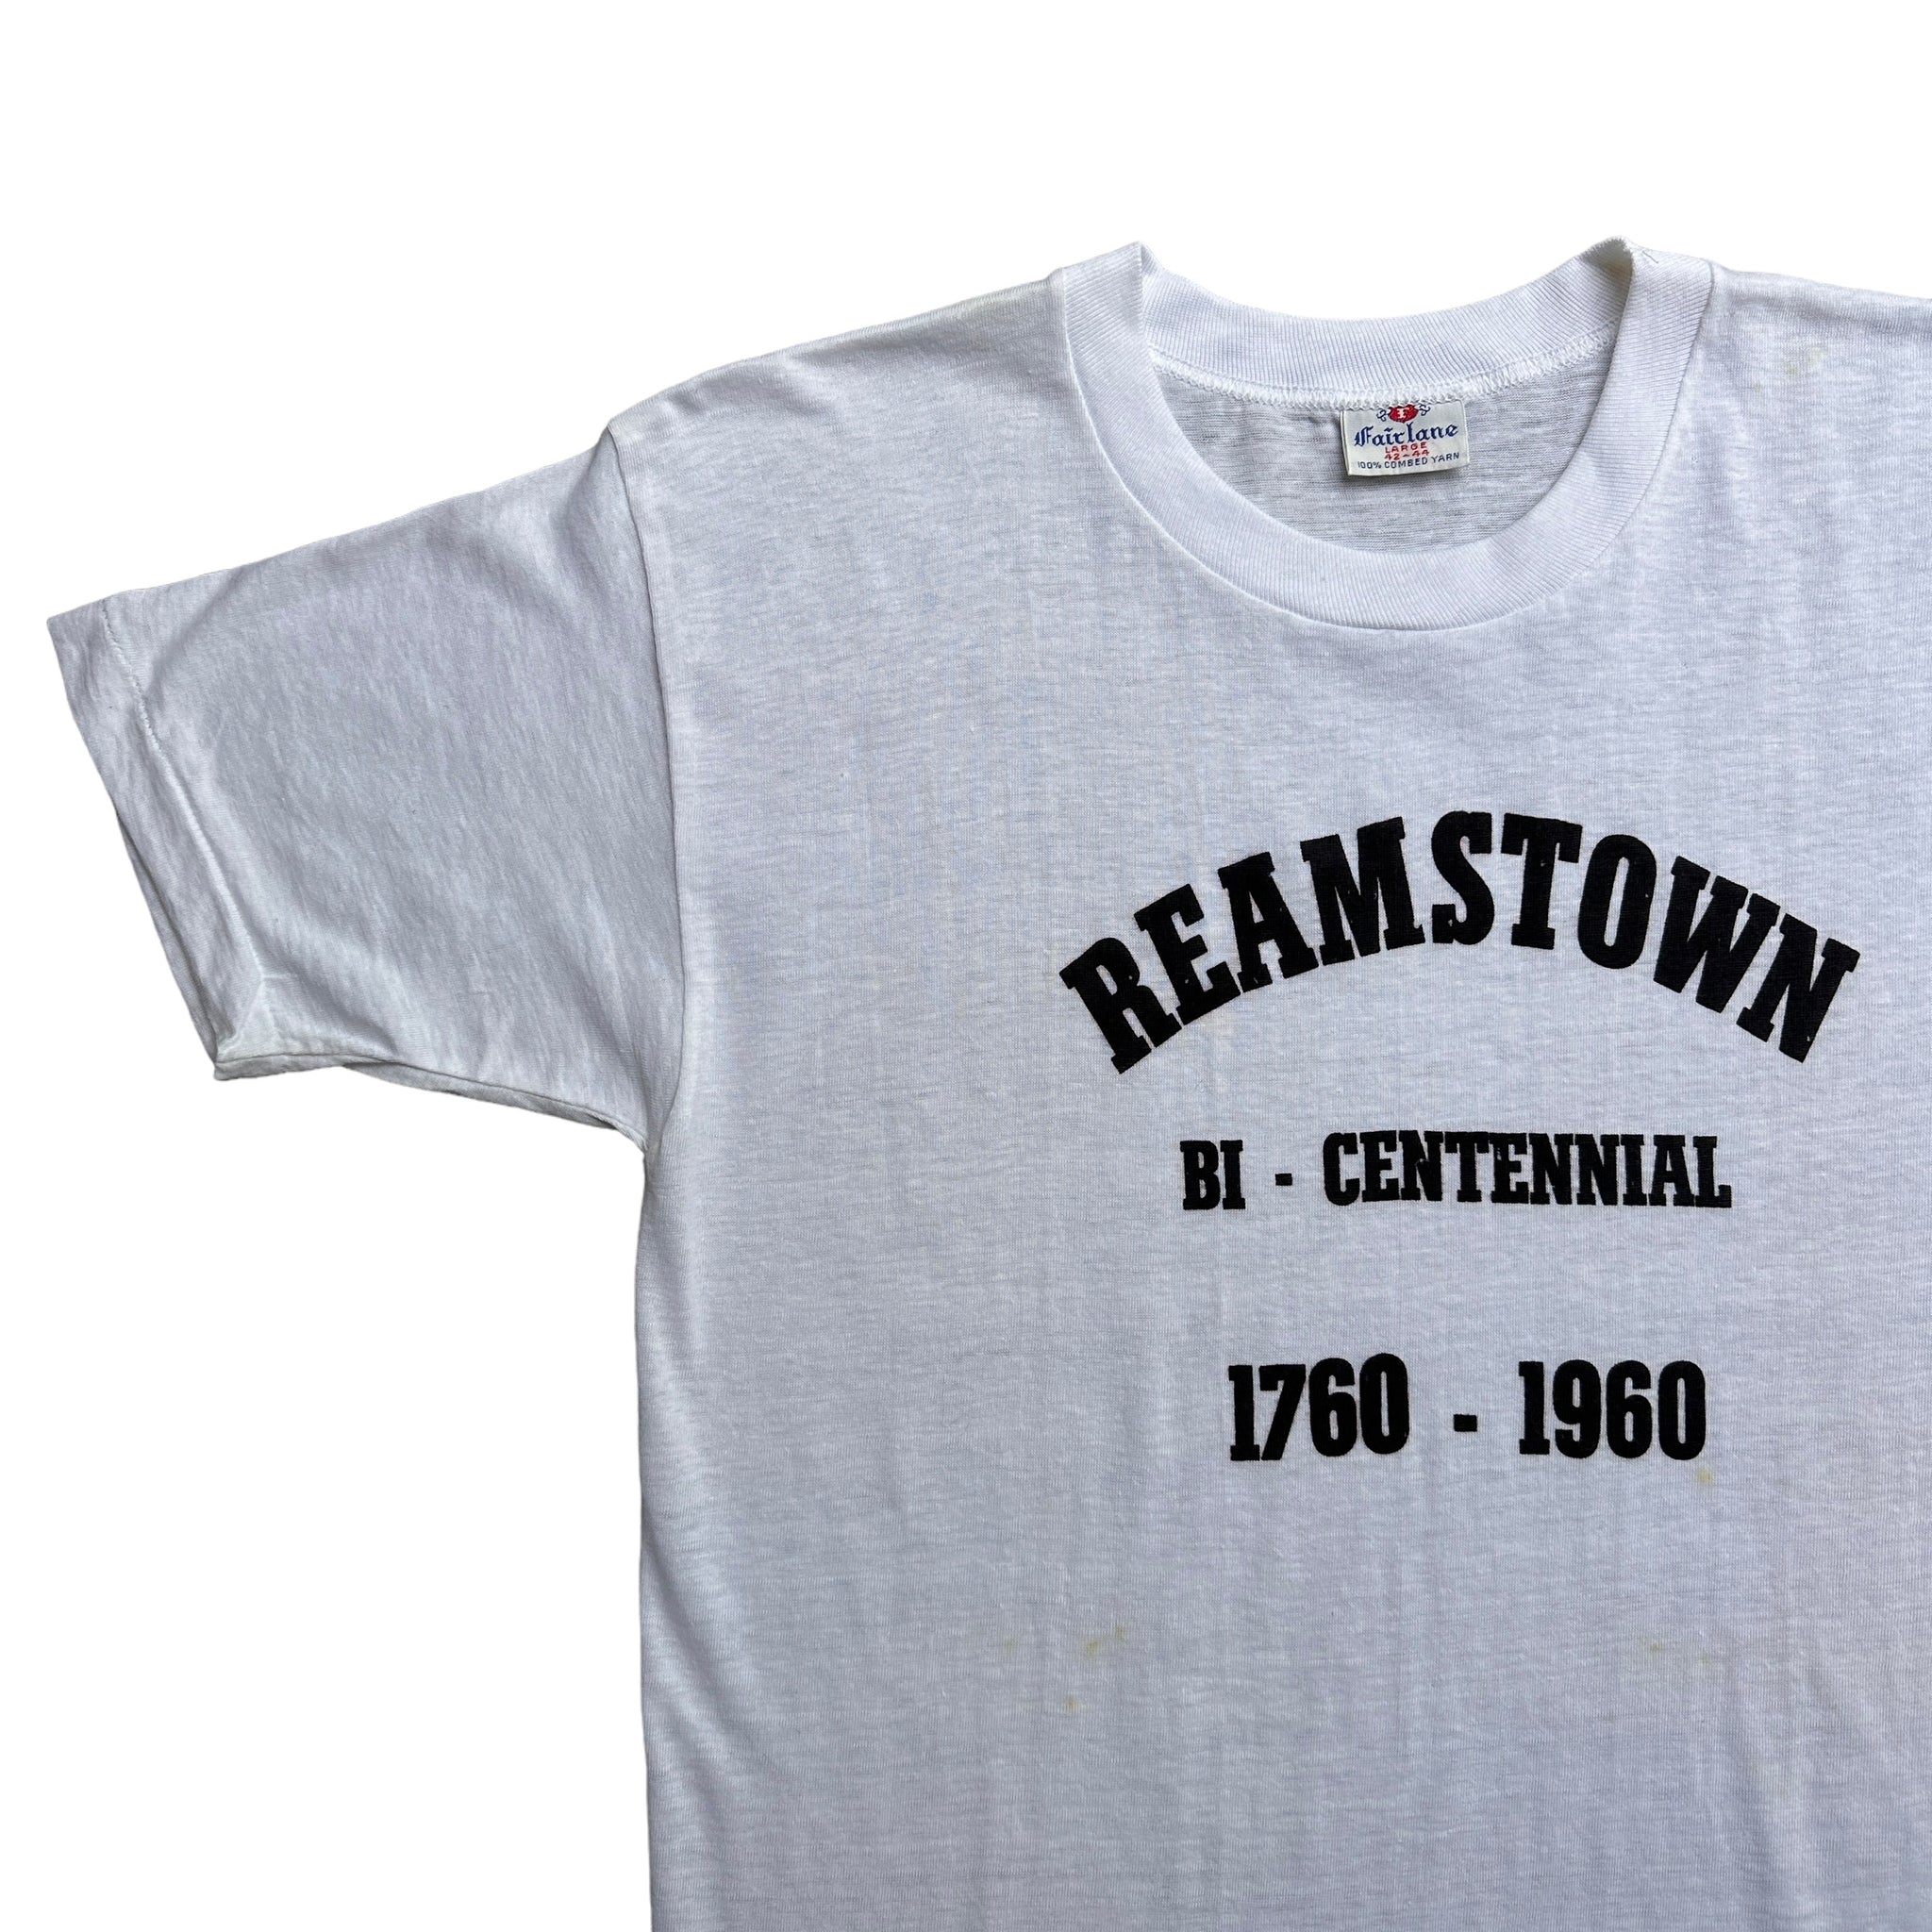 60s Reamstown bi centennial shirt  S/M